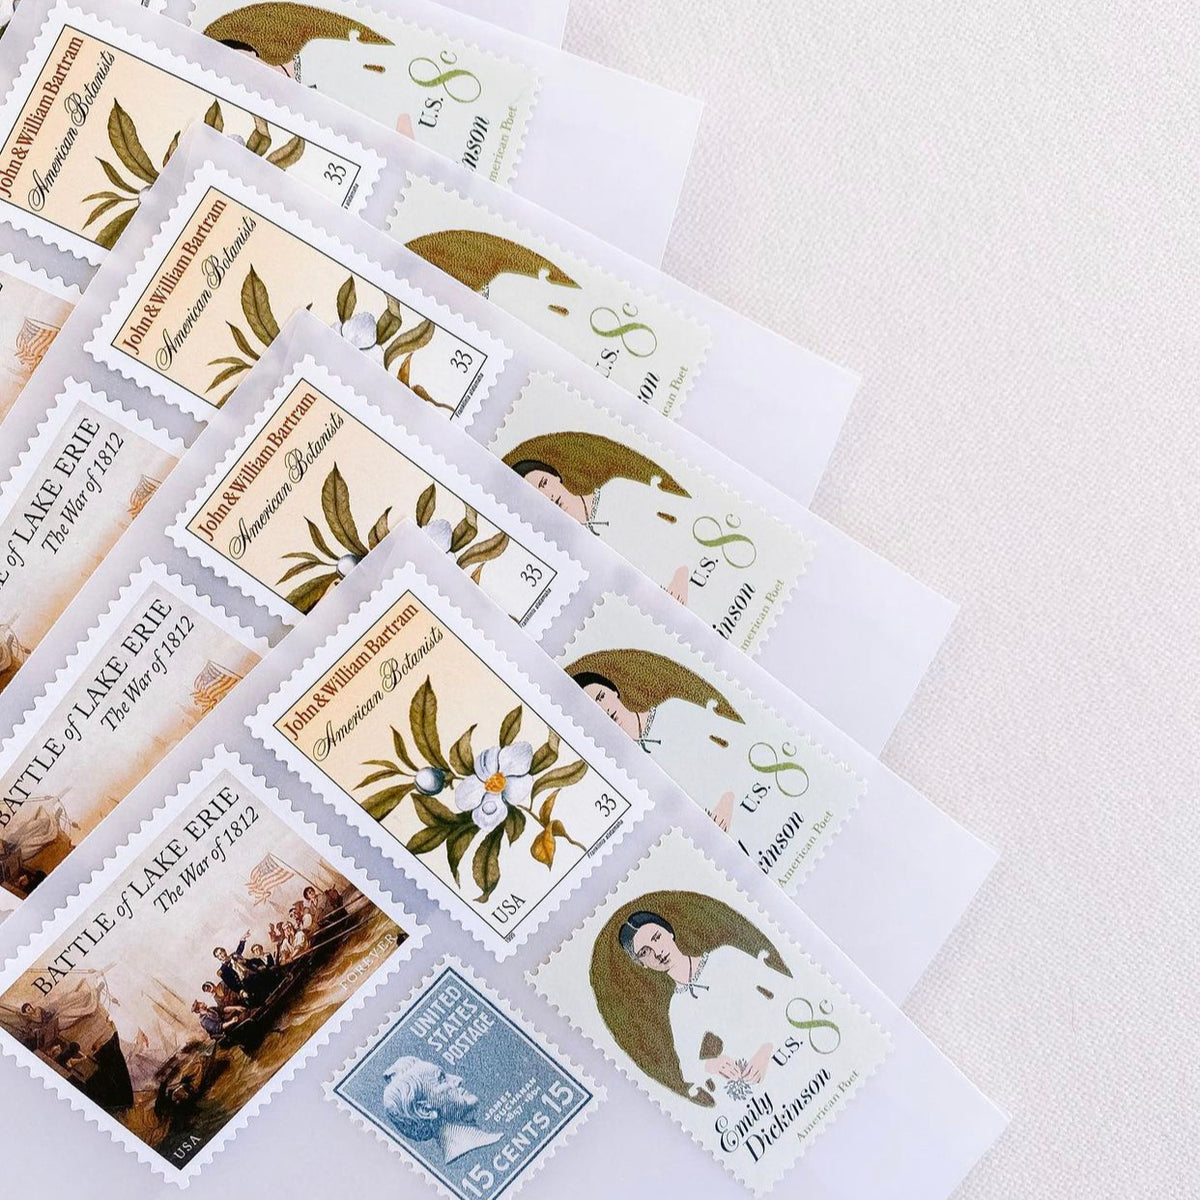 Set of 20 Minnesota Statehood 3c Unused USPS Vintage Postage Stamps Green 